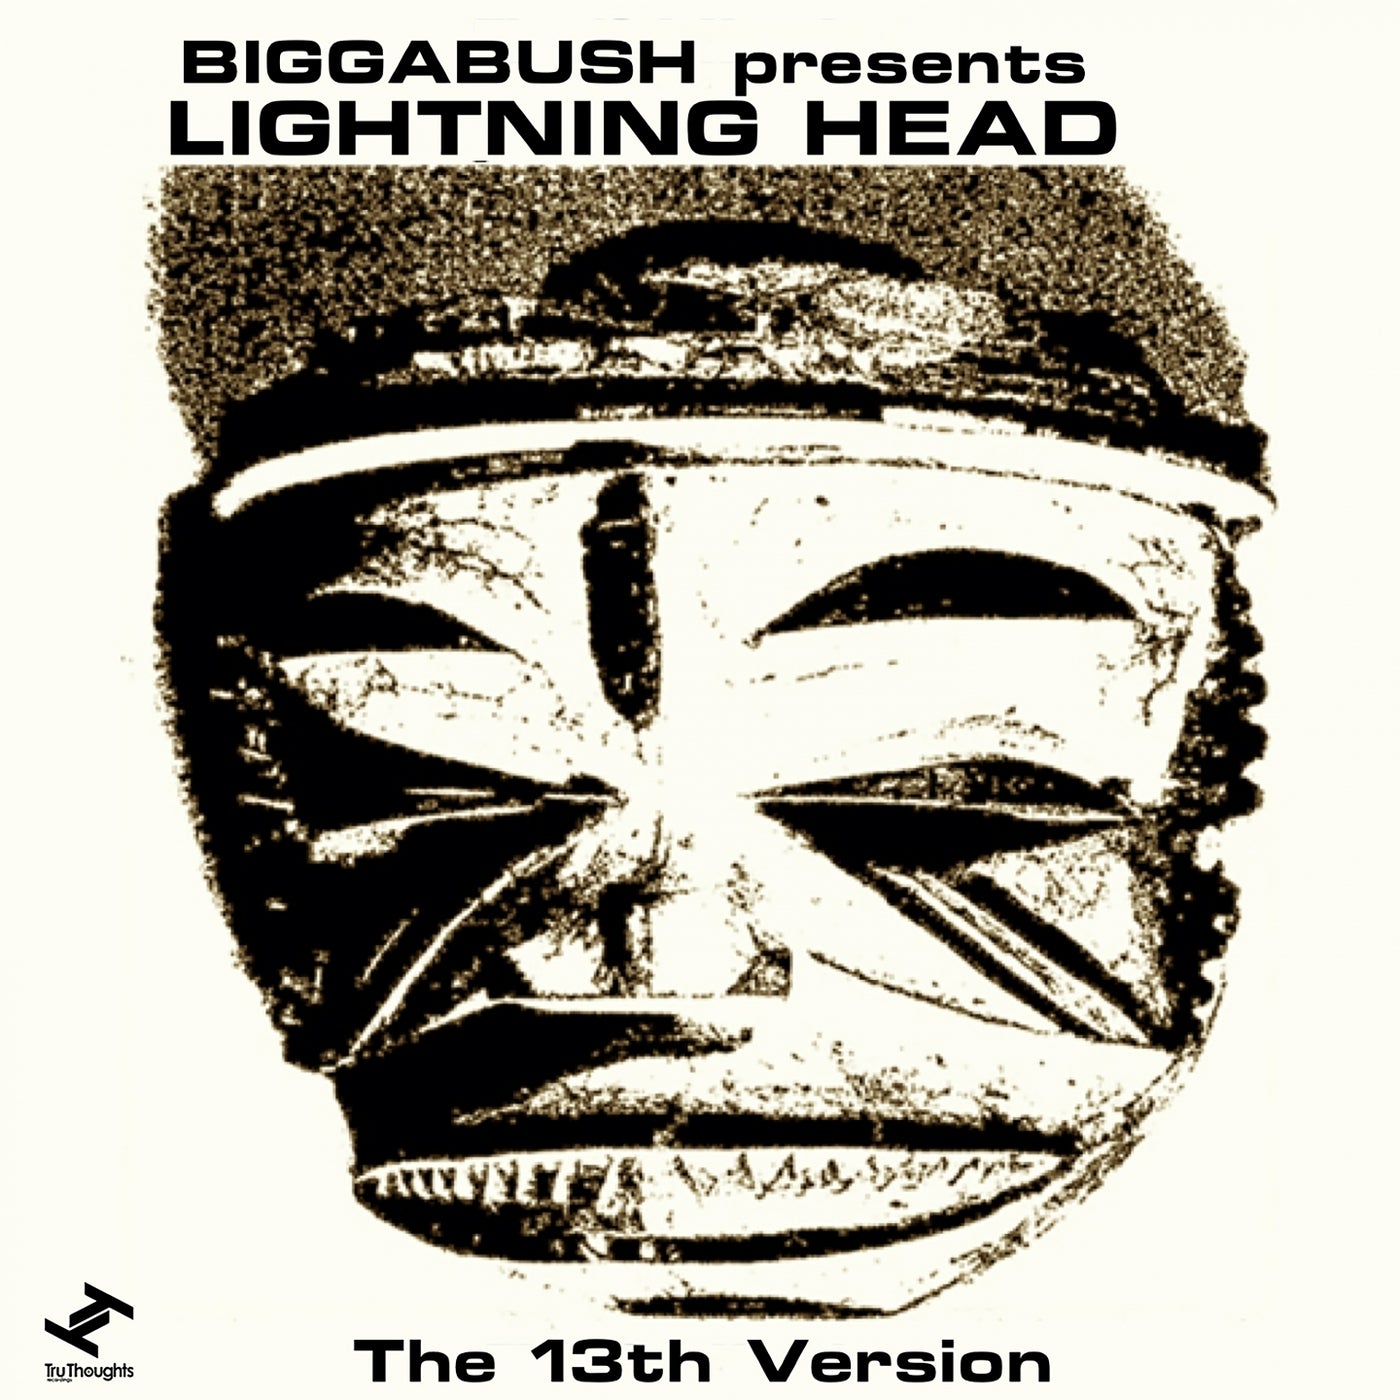 The 13th Version (Biggabush presents Lightning Head)